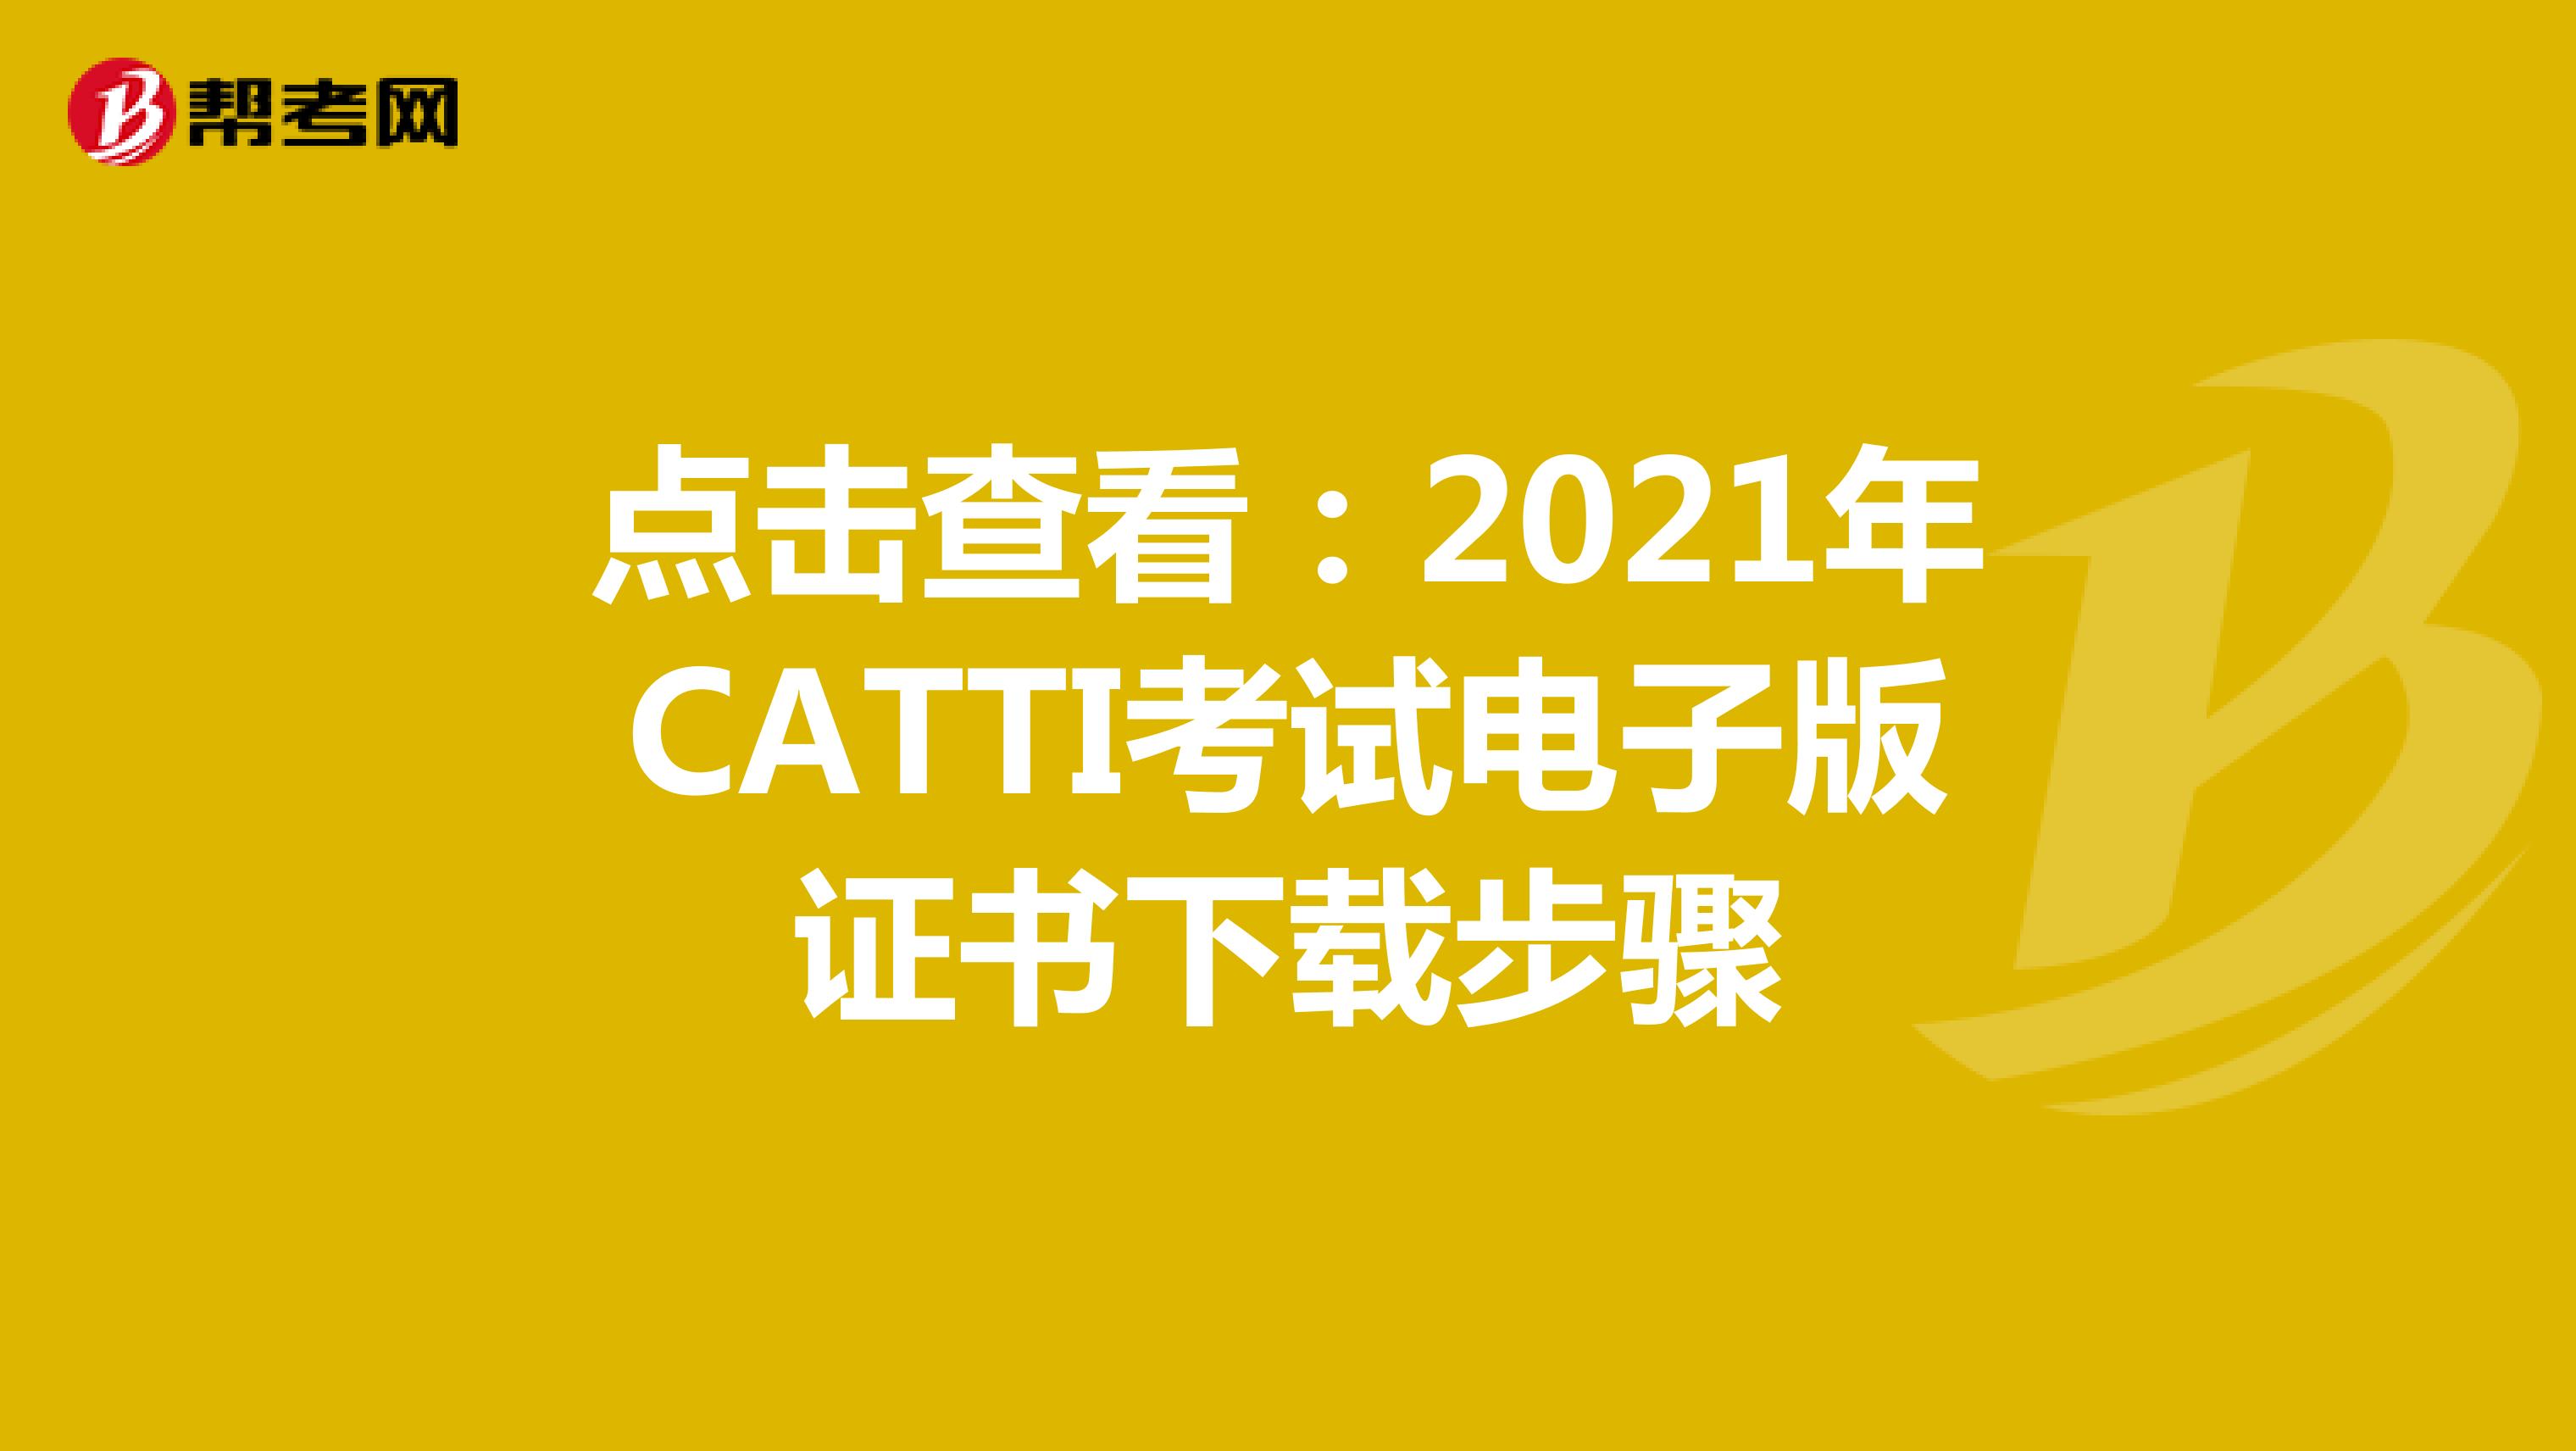 点击查看：2021年CATTI考试电子版证书下载步骤